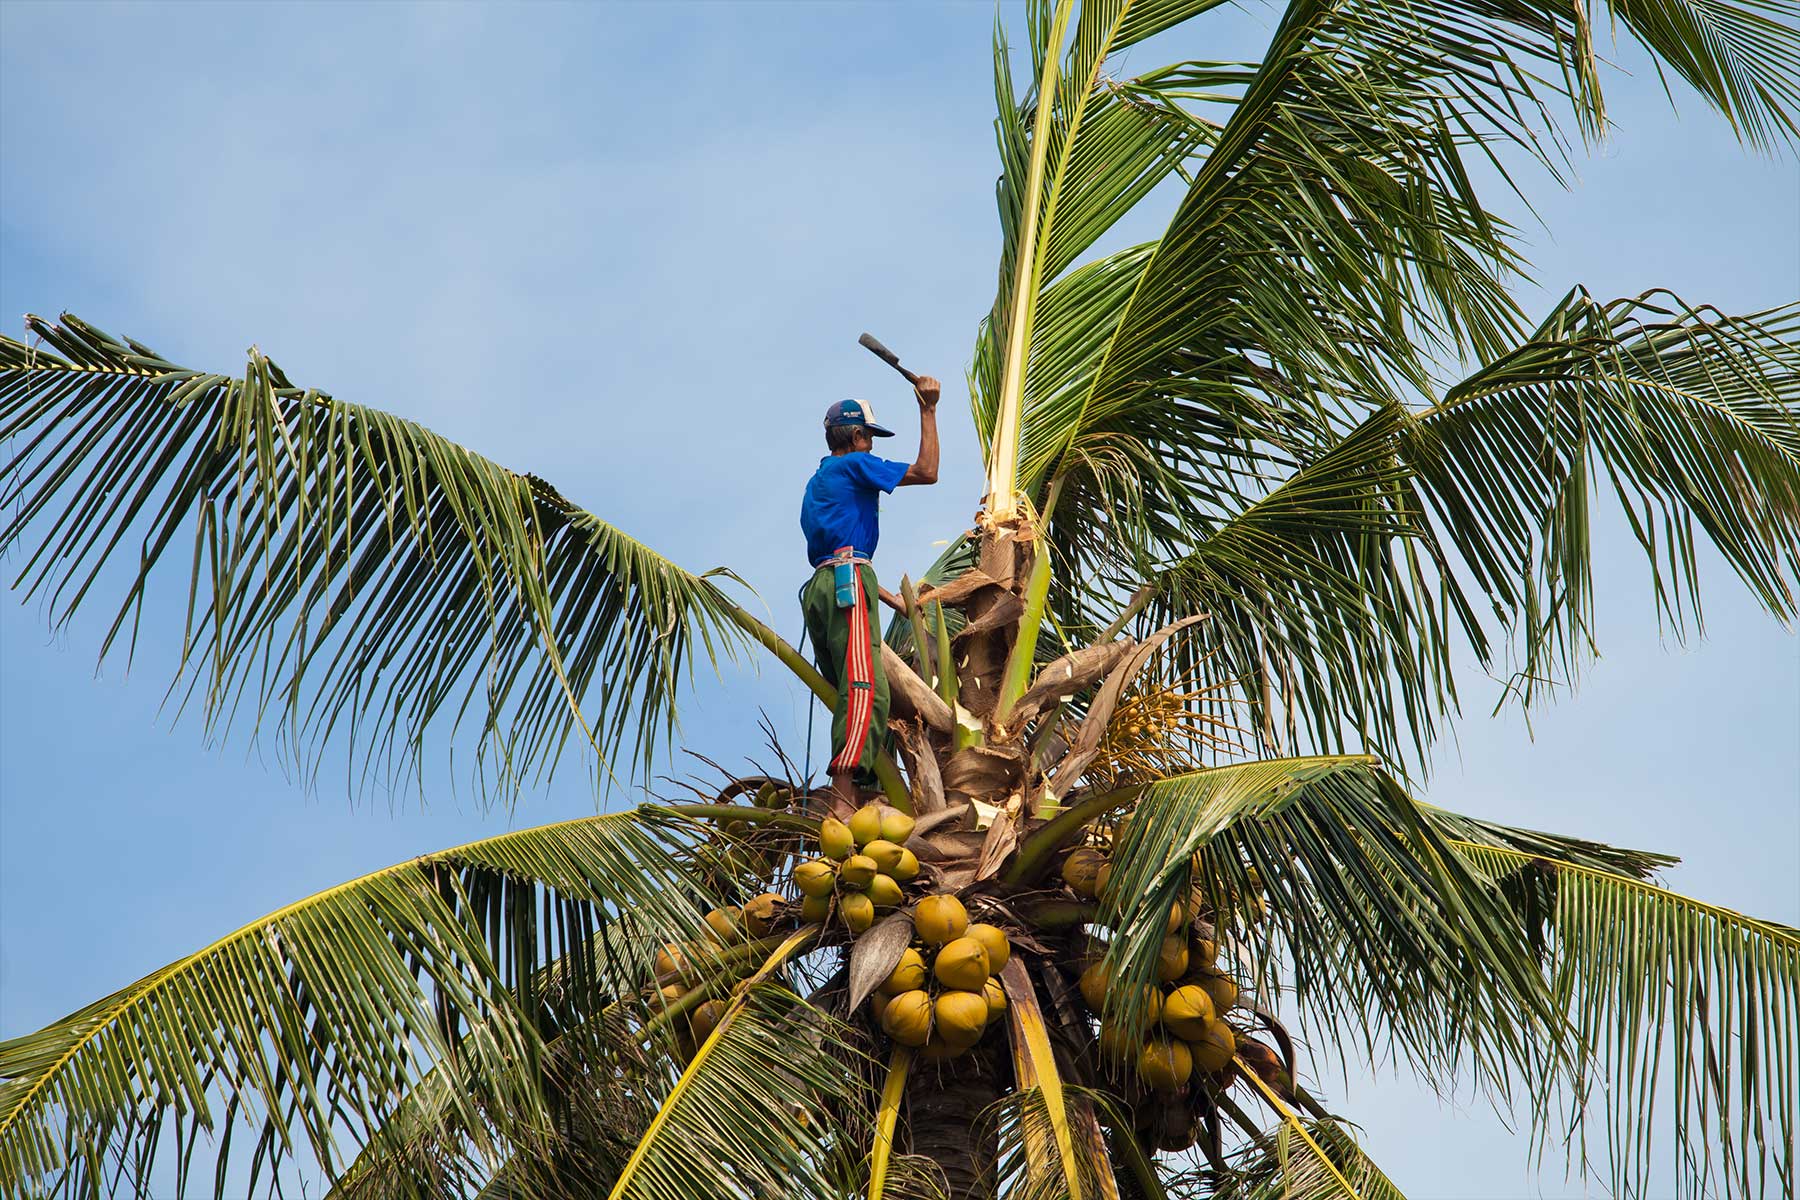 Die meisten Kokosnüsse werden von Kleinbauern per Hand geerntet. Junge Kokosnüsse sind grün, dreieckig und etwa kopfgroß. Sie enthalten vor allem Kokoswasser. Die reiferen Früchte liefern später die Basis für Kokosmilch und Kokoscreme sowie Kokosraspeln und Kokosmehl.  (Bild: © paulprescott72/iStock.com)